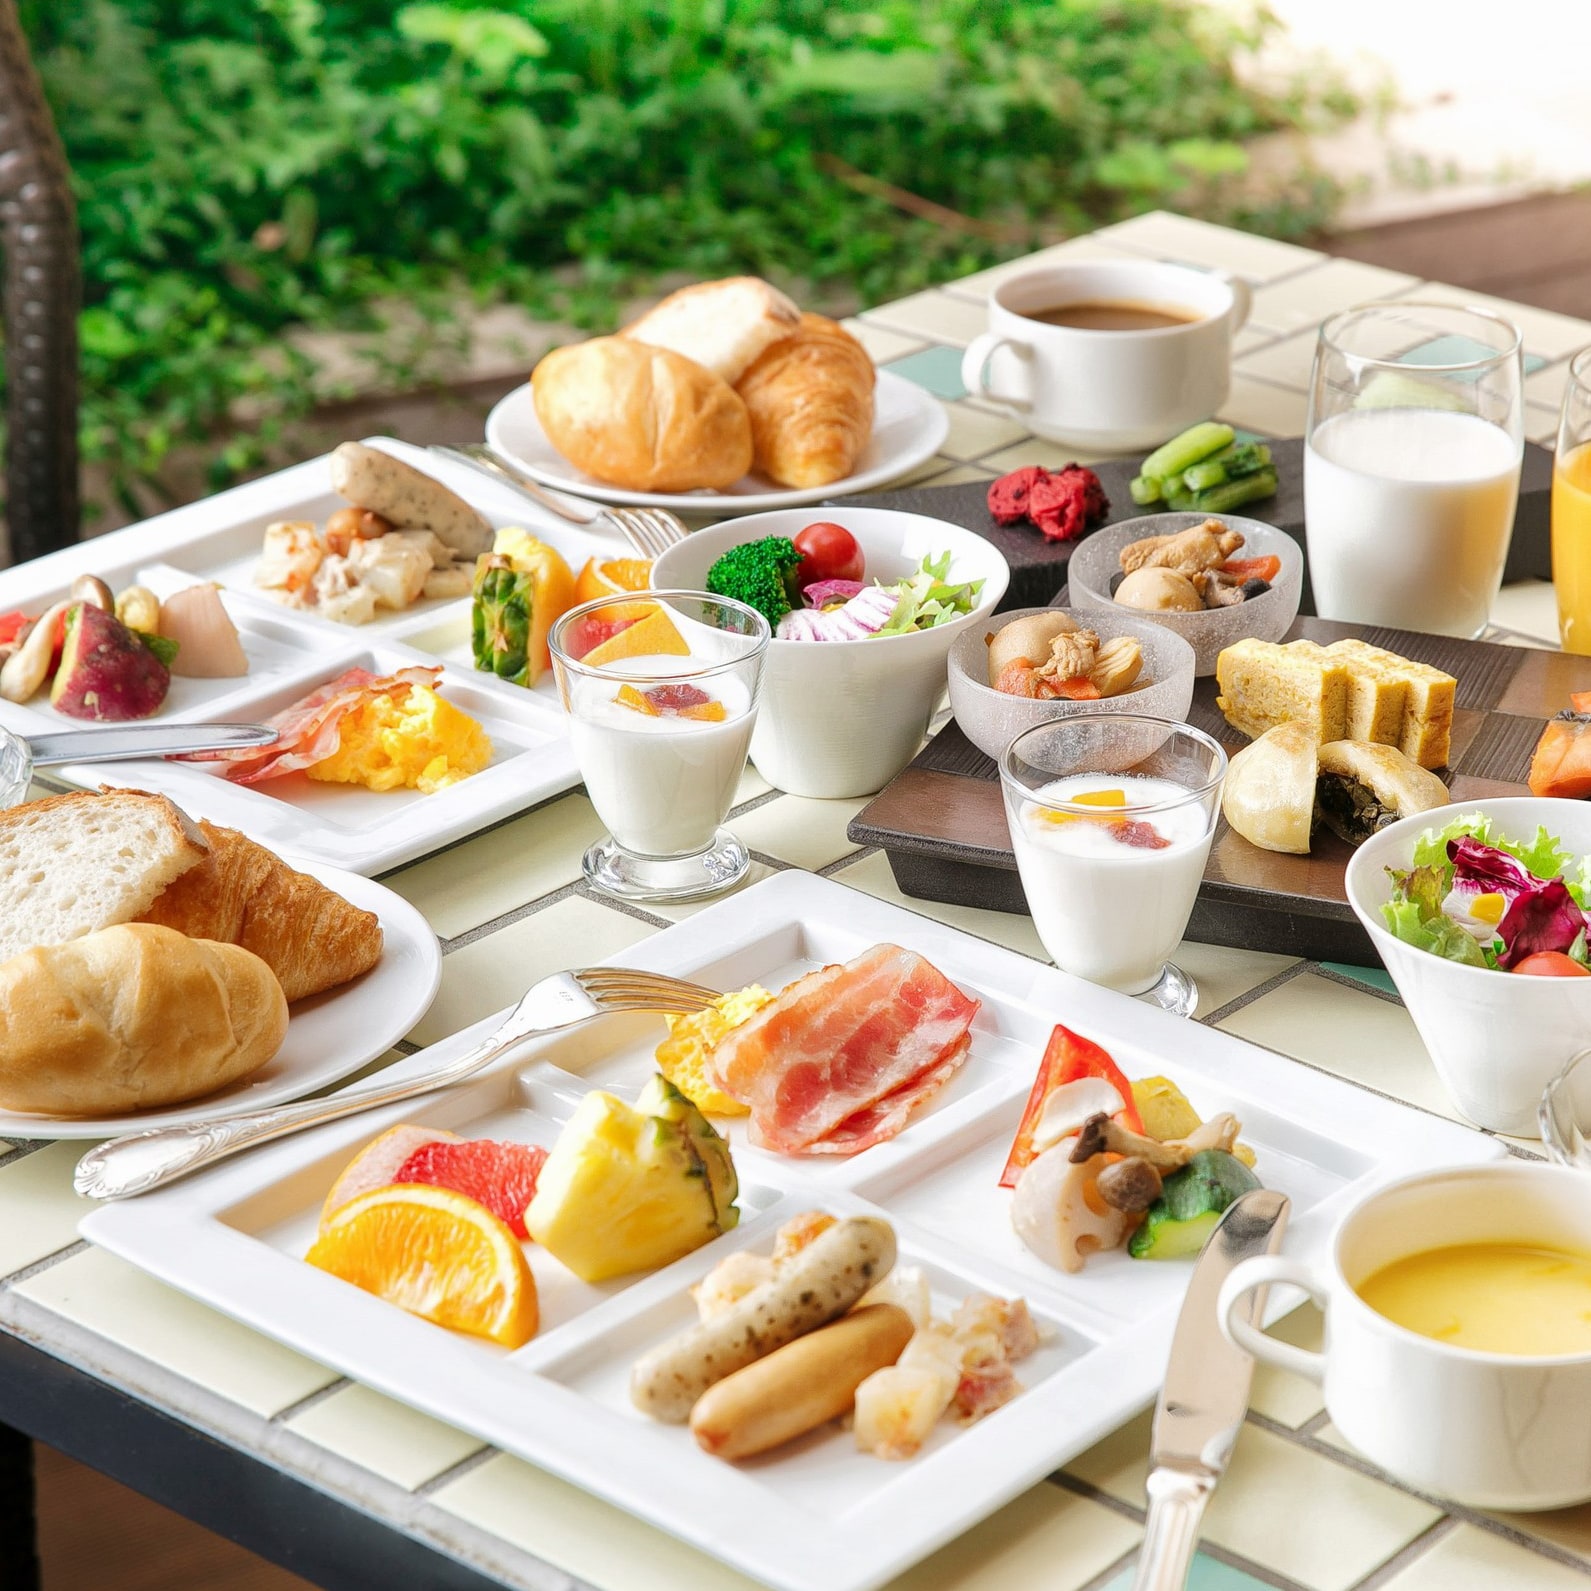 Nikmati sarapan prasmanan lengkap ala Jepang dan Barat di B1F "DONODONO" yang menghadap ke halaman